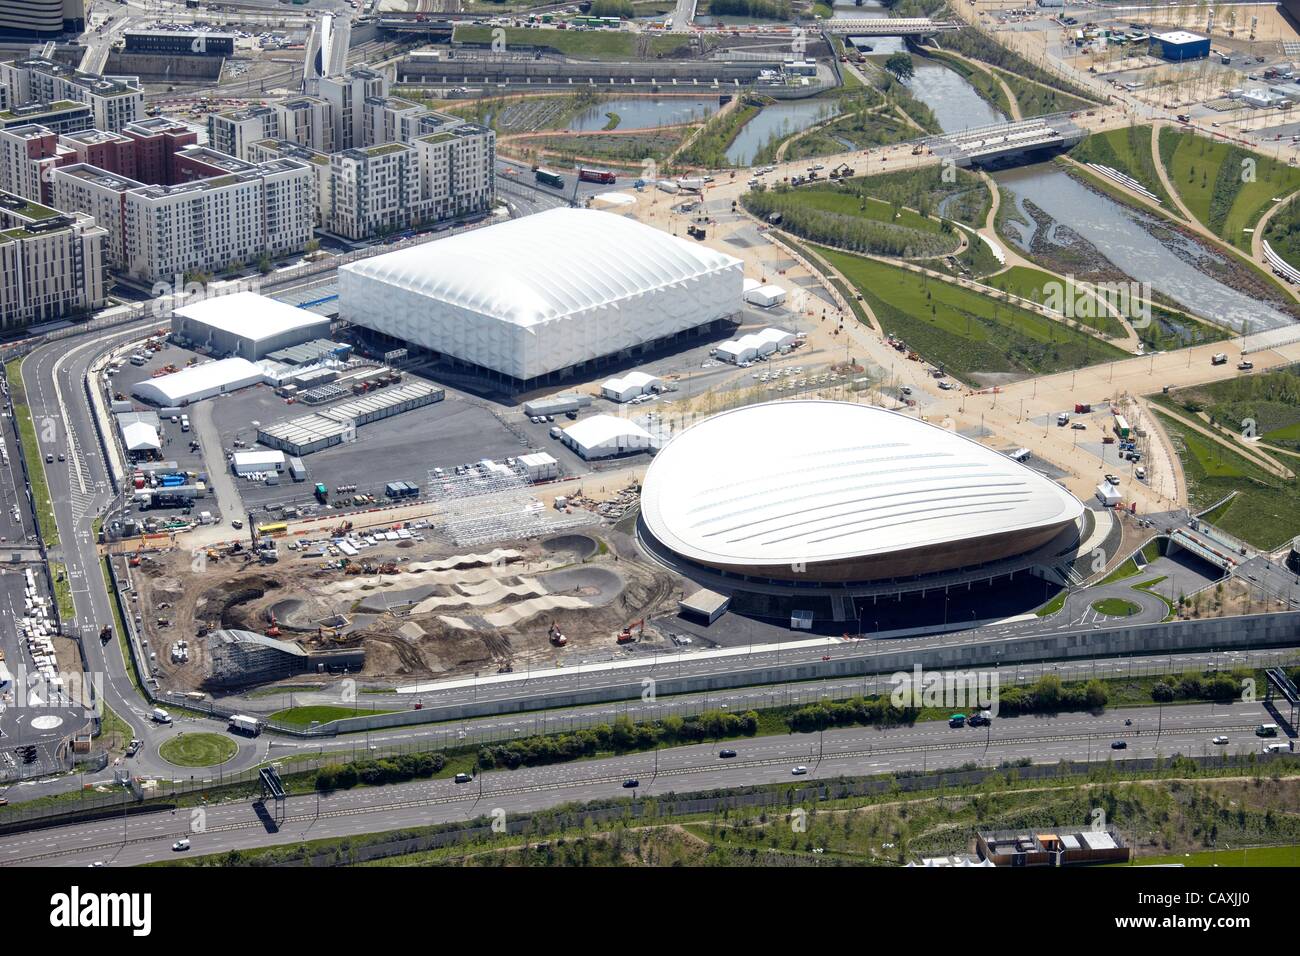 Photographie aérienne de l'arène de basket-ball dans le Parc Olympique et le vélodrome olympique de Londres 2012, site, Stratford London E20 UK, 30 avril 2012 Banque D'Images